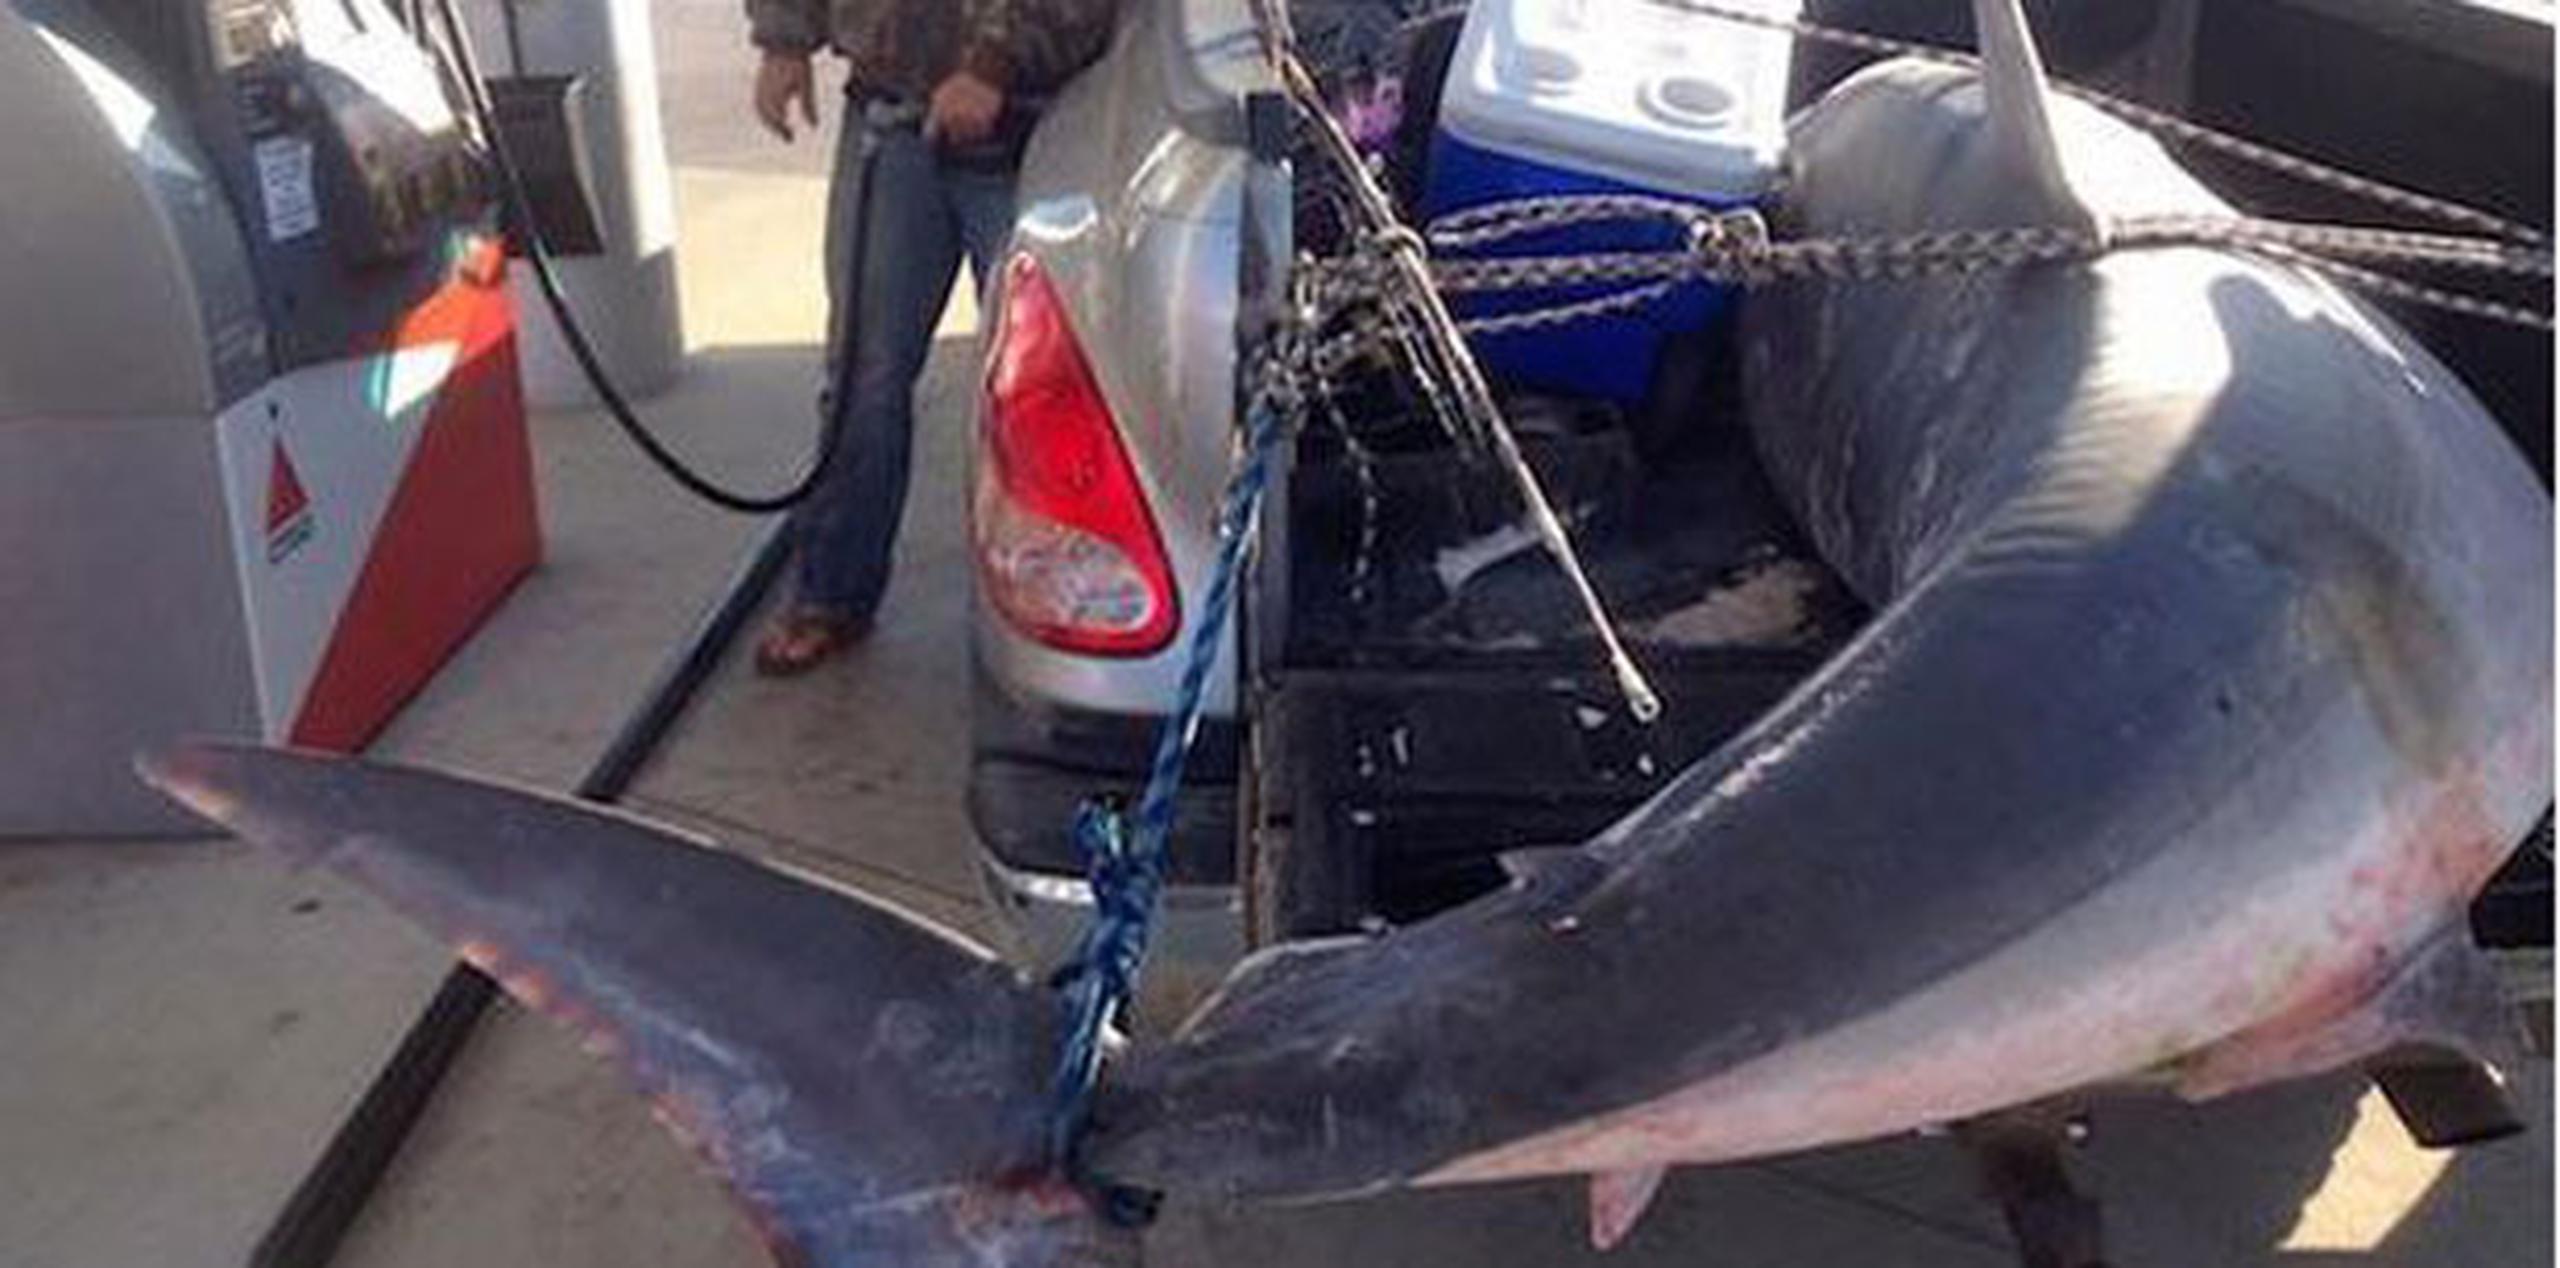 Ambos pescadores intentaron pasar desapercibidos con el tiburón, pero una foto comenzó a circular en las redes sociales. (Twitter/ @Outdoor_Hub)